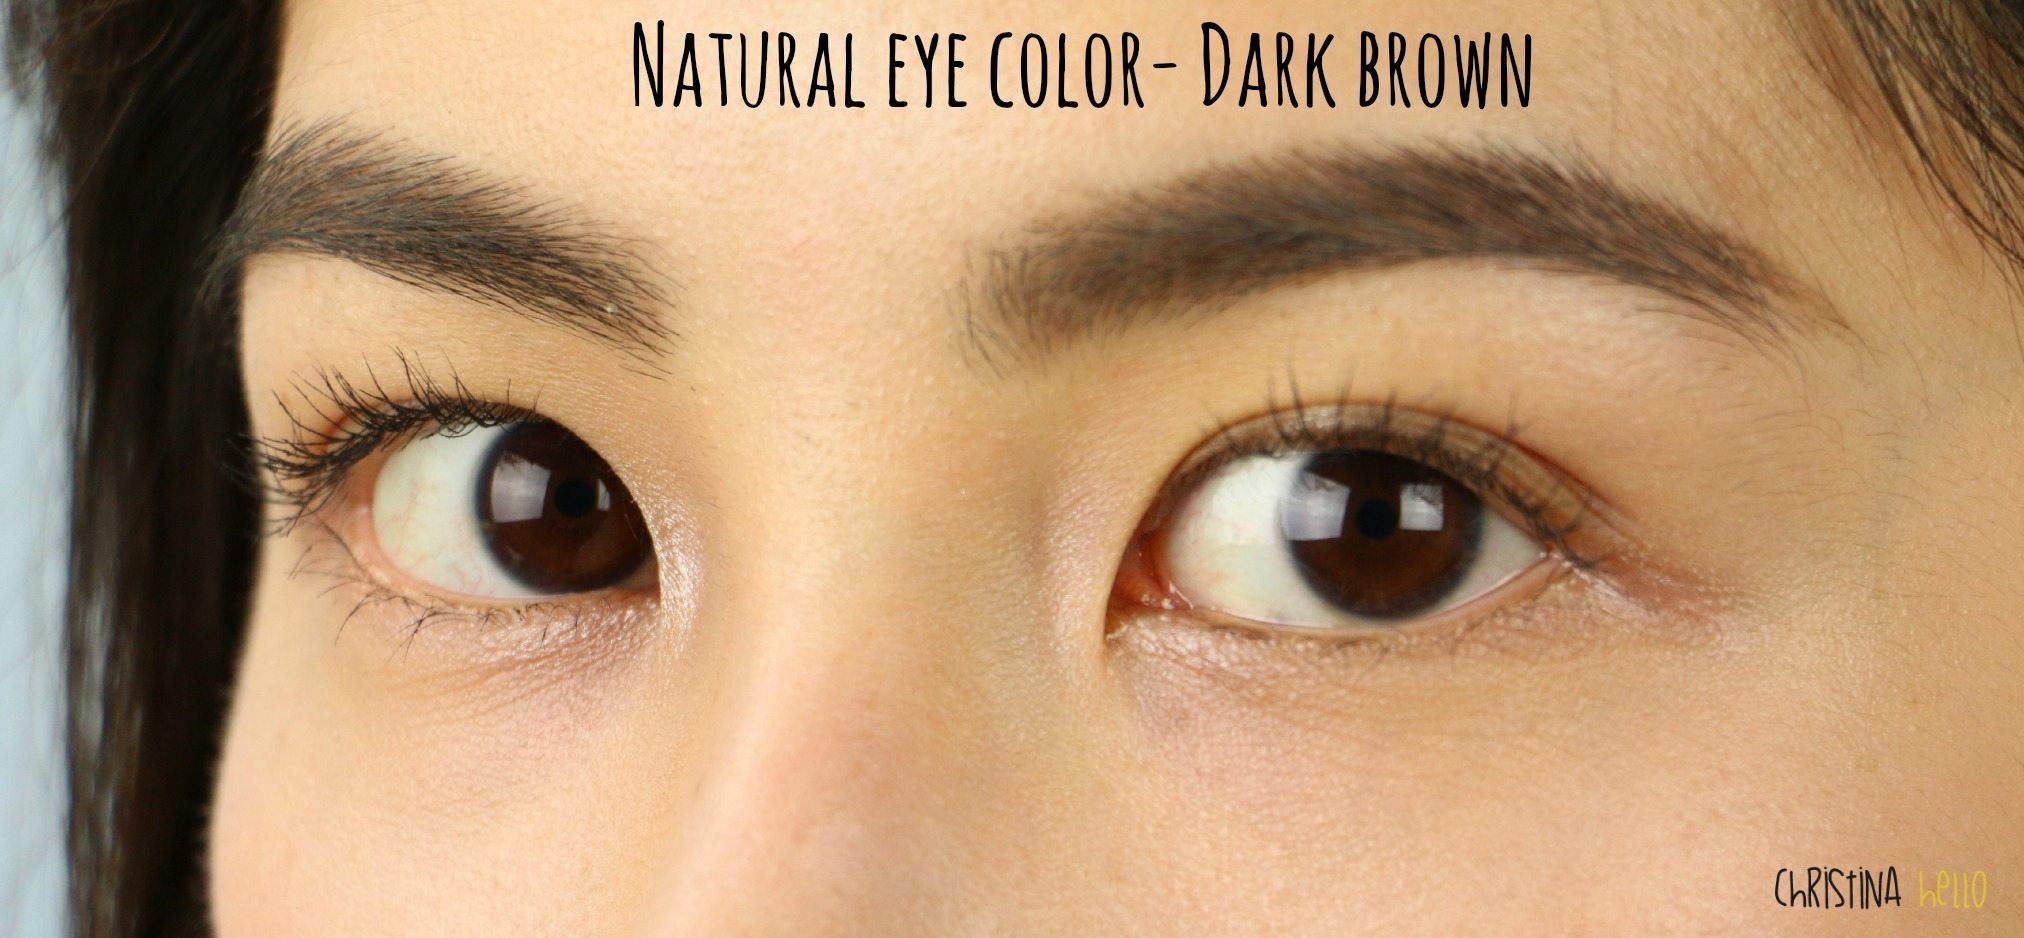 gemstone green contacts on dark brown eyes